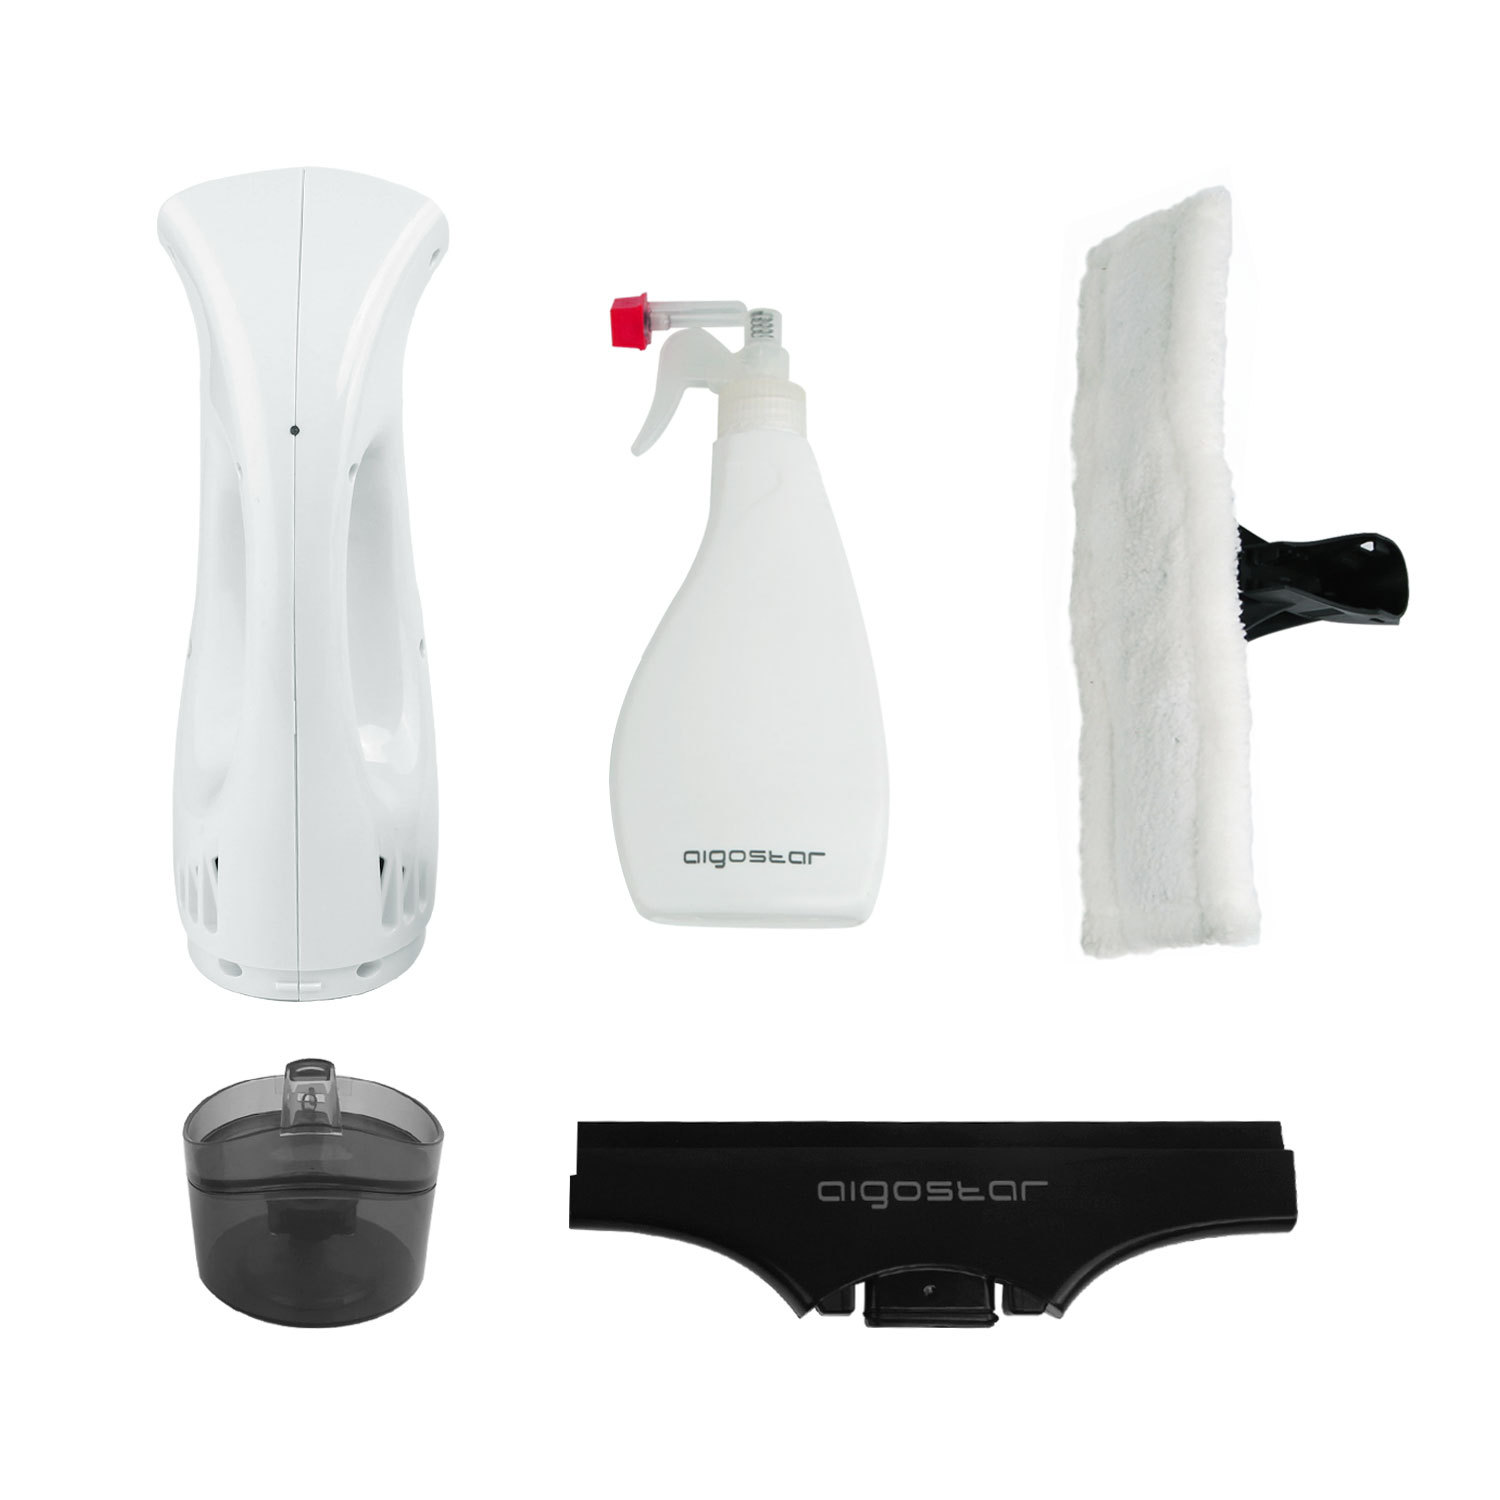 Aigostar Penguin 30DFV – 12W Aspirador limpiacristales especialmente diseñado para limpiar ventanas. Inalámbrico, incluye vaporizador, boquilla con paño de microfibra y aspiradoras intercambiables